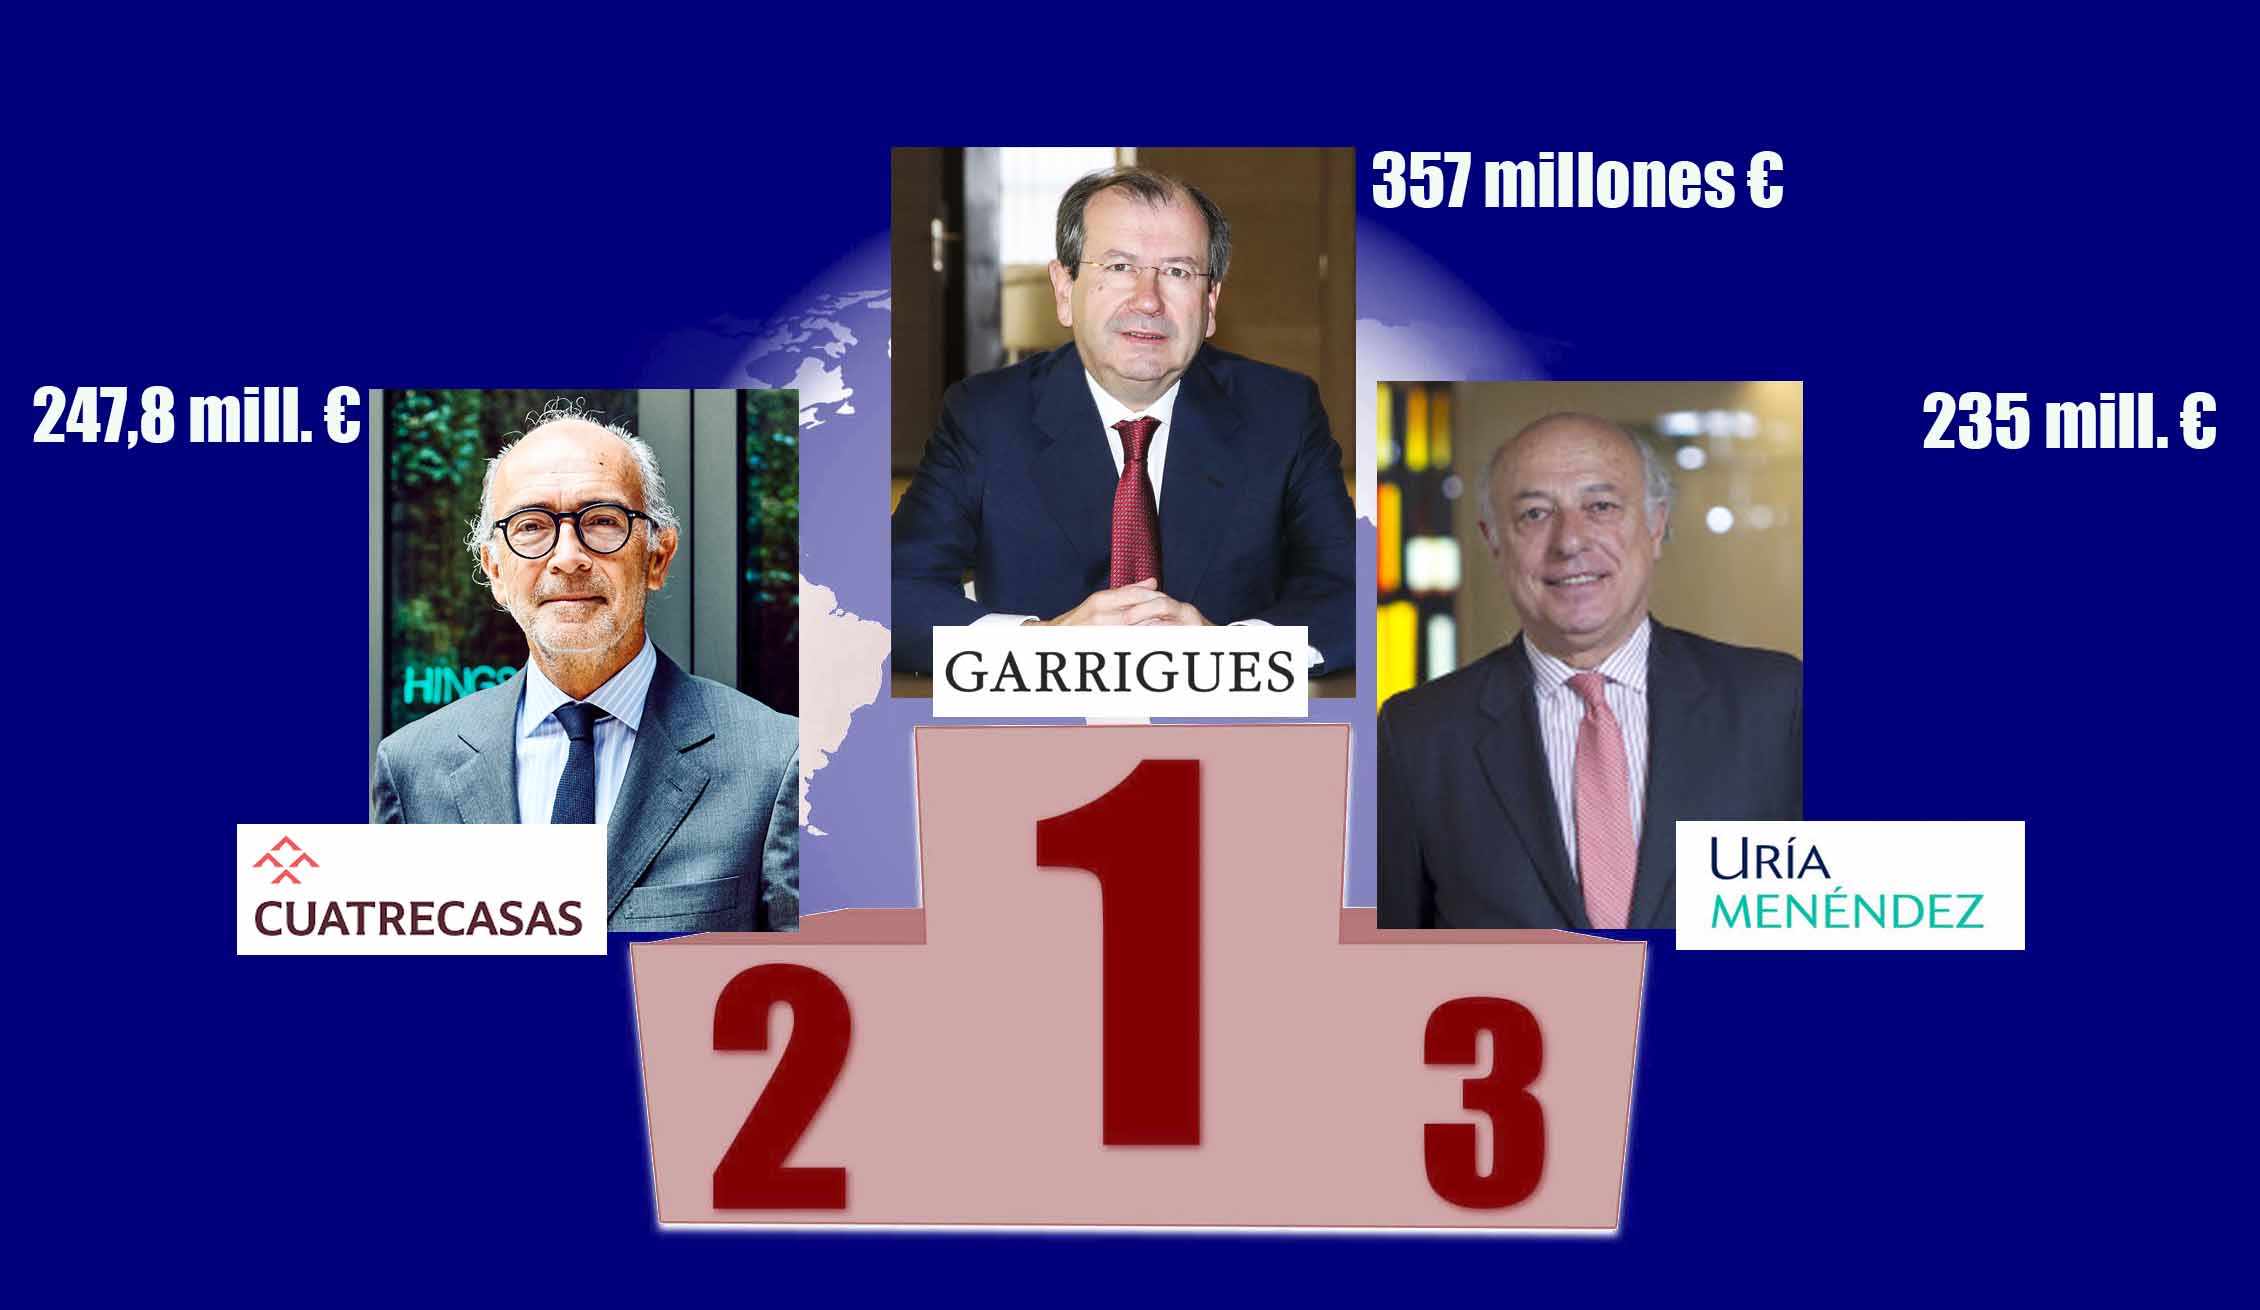 Los 3 grandes despachos españoles facturaron 839,8 millones de euros en 2017